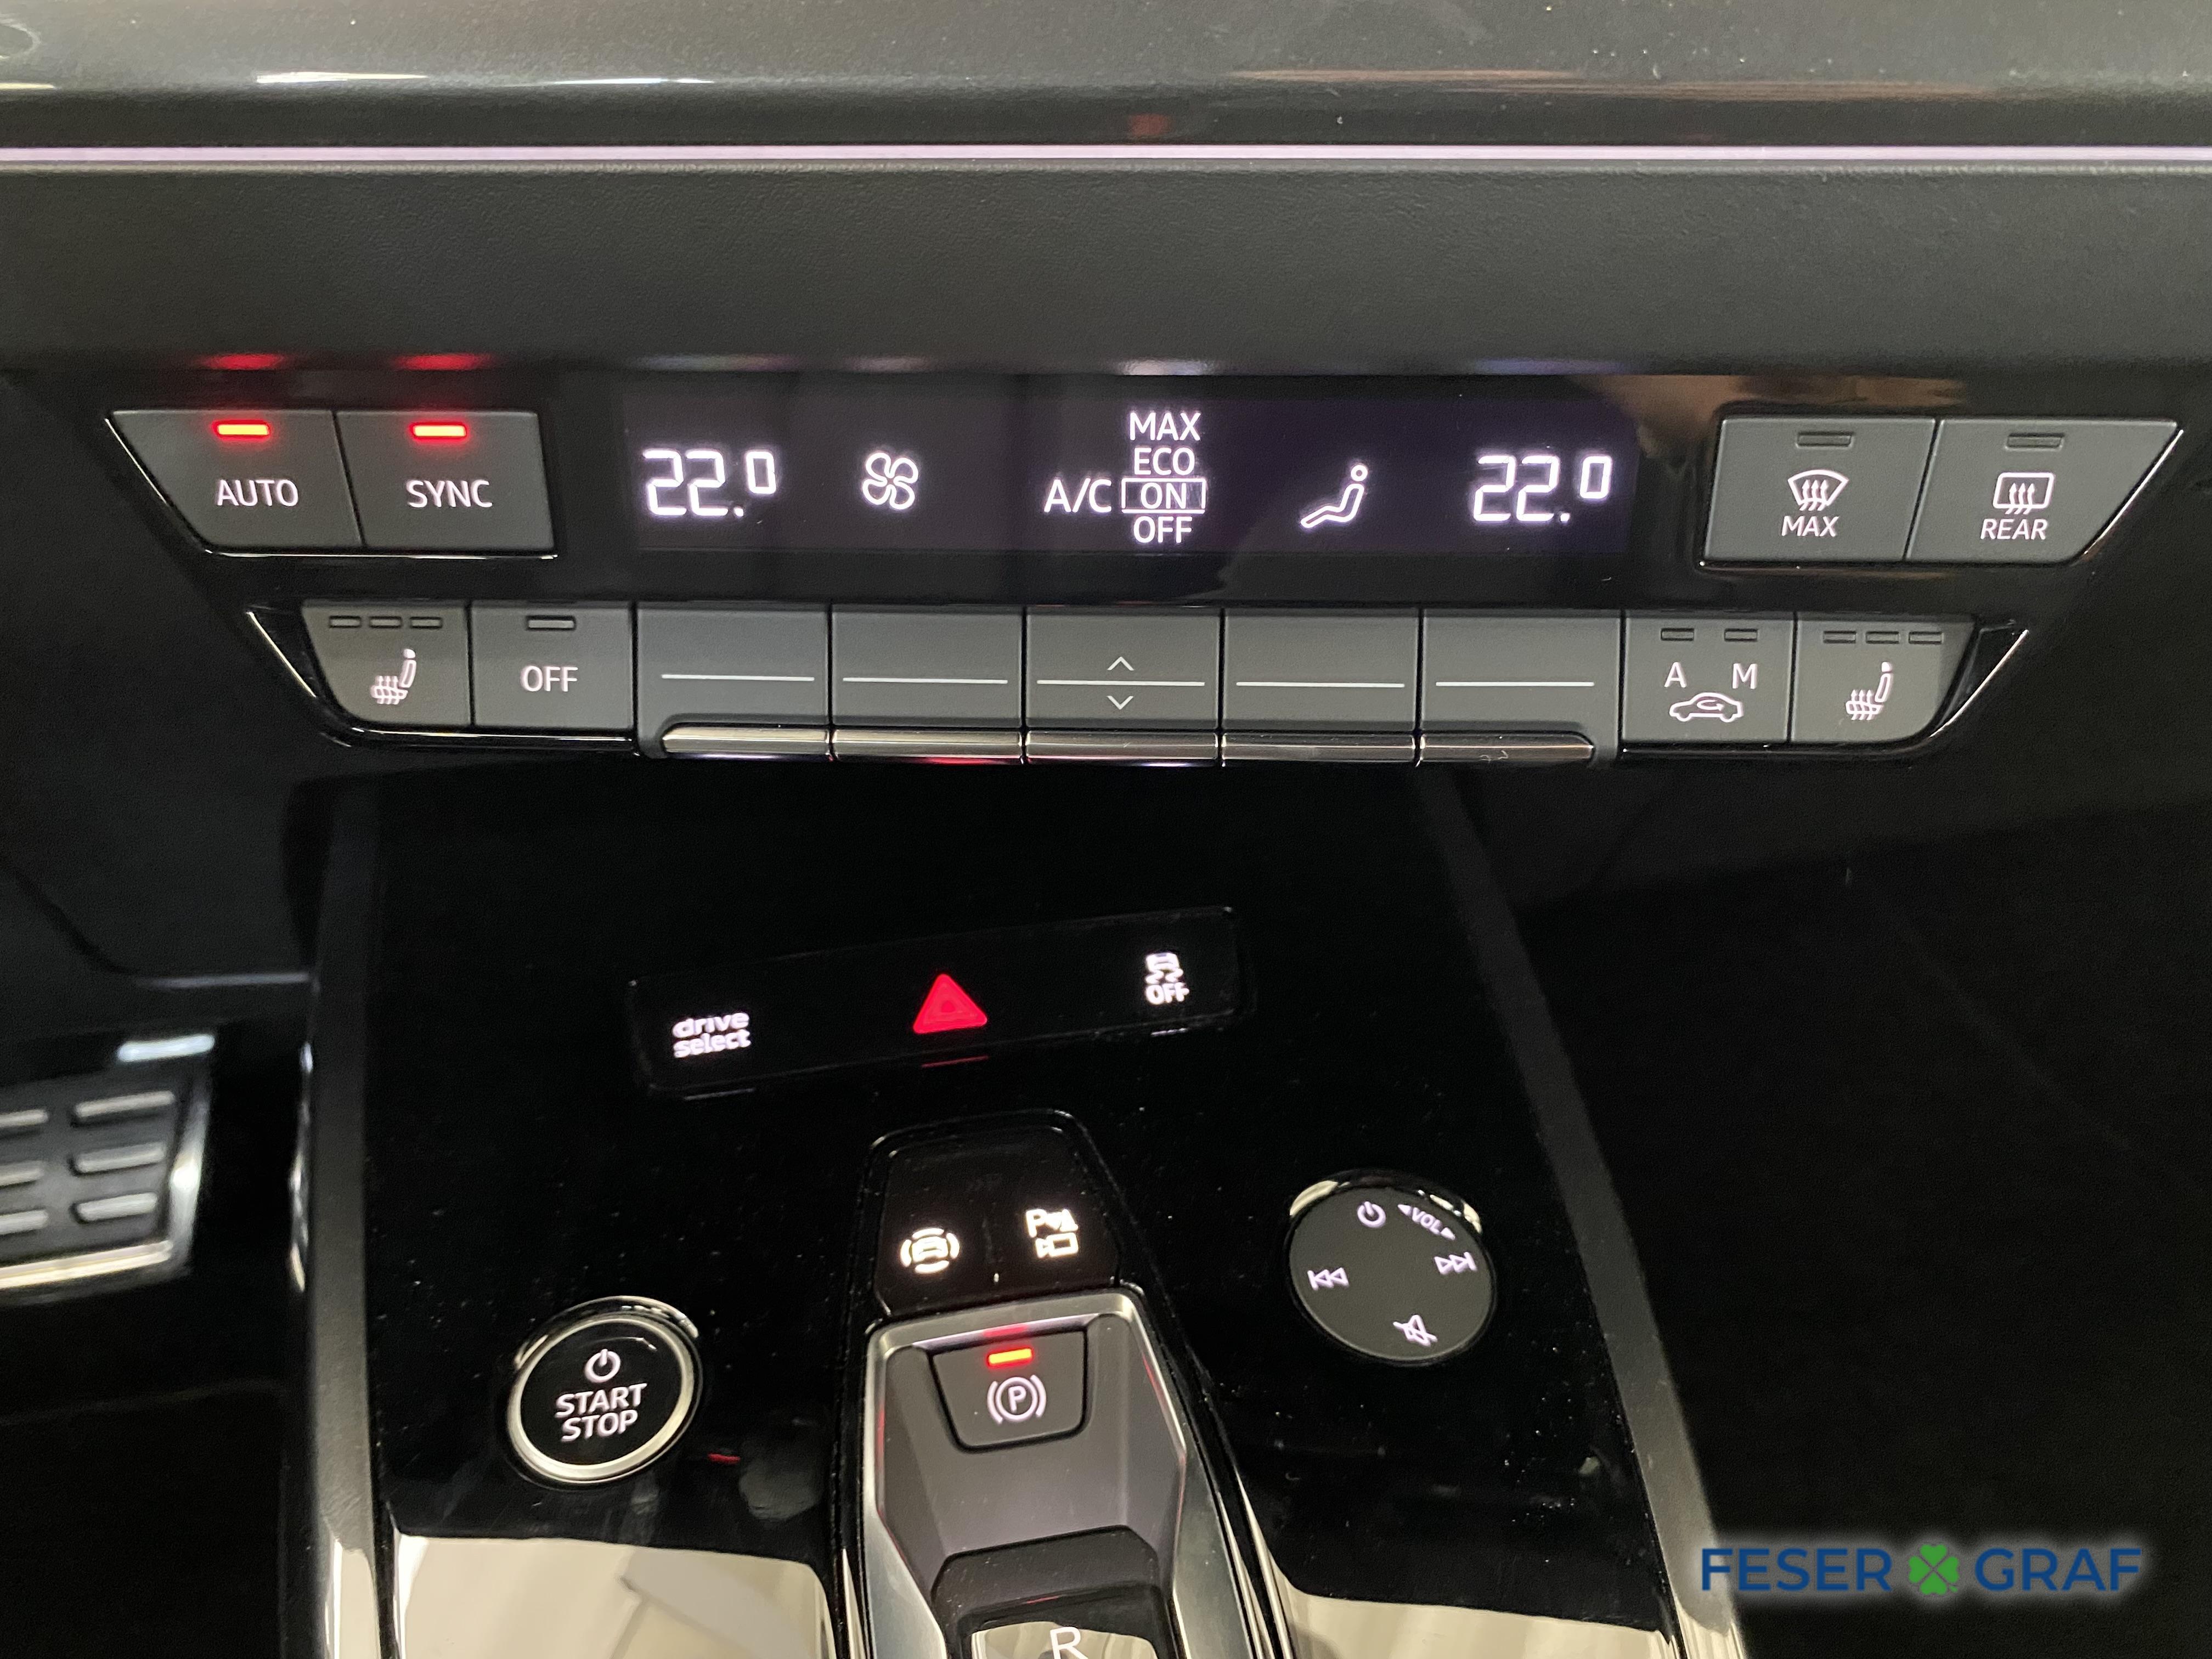 Audi Q4 e-tron Matrix-LED/Panorama/Navi 